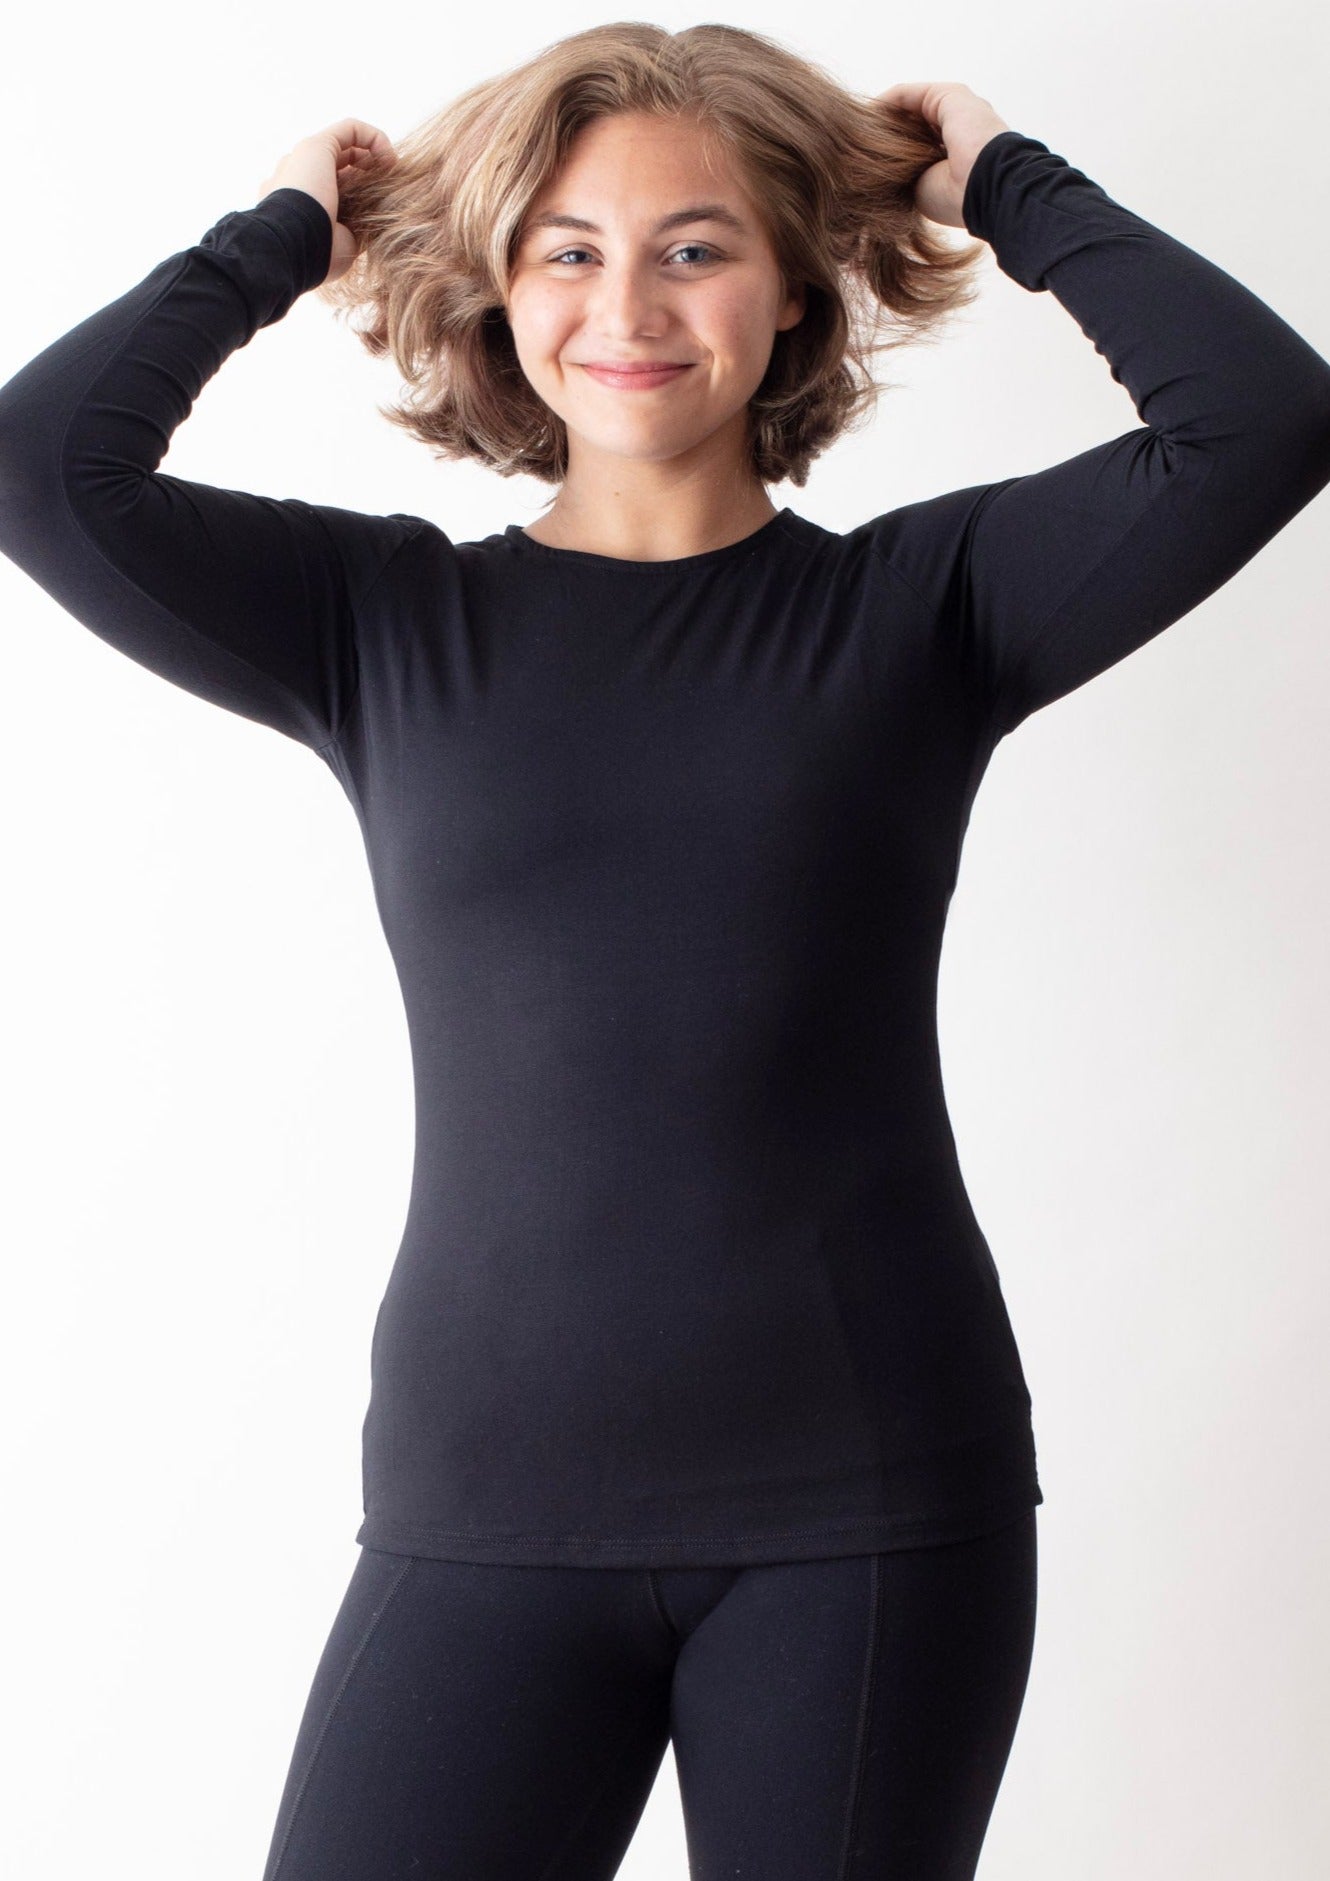 Long & Short Sleeve Yoga Tops for Women